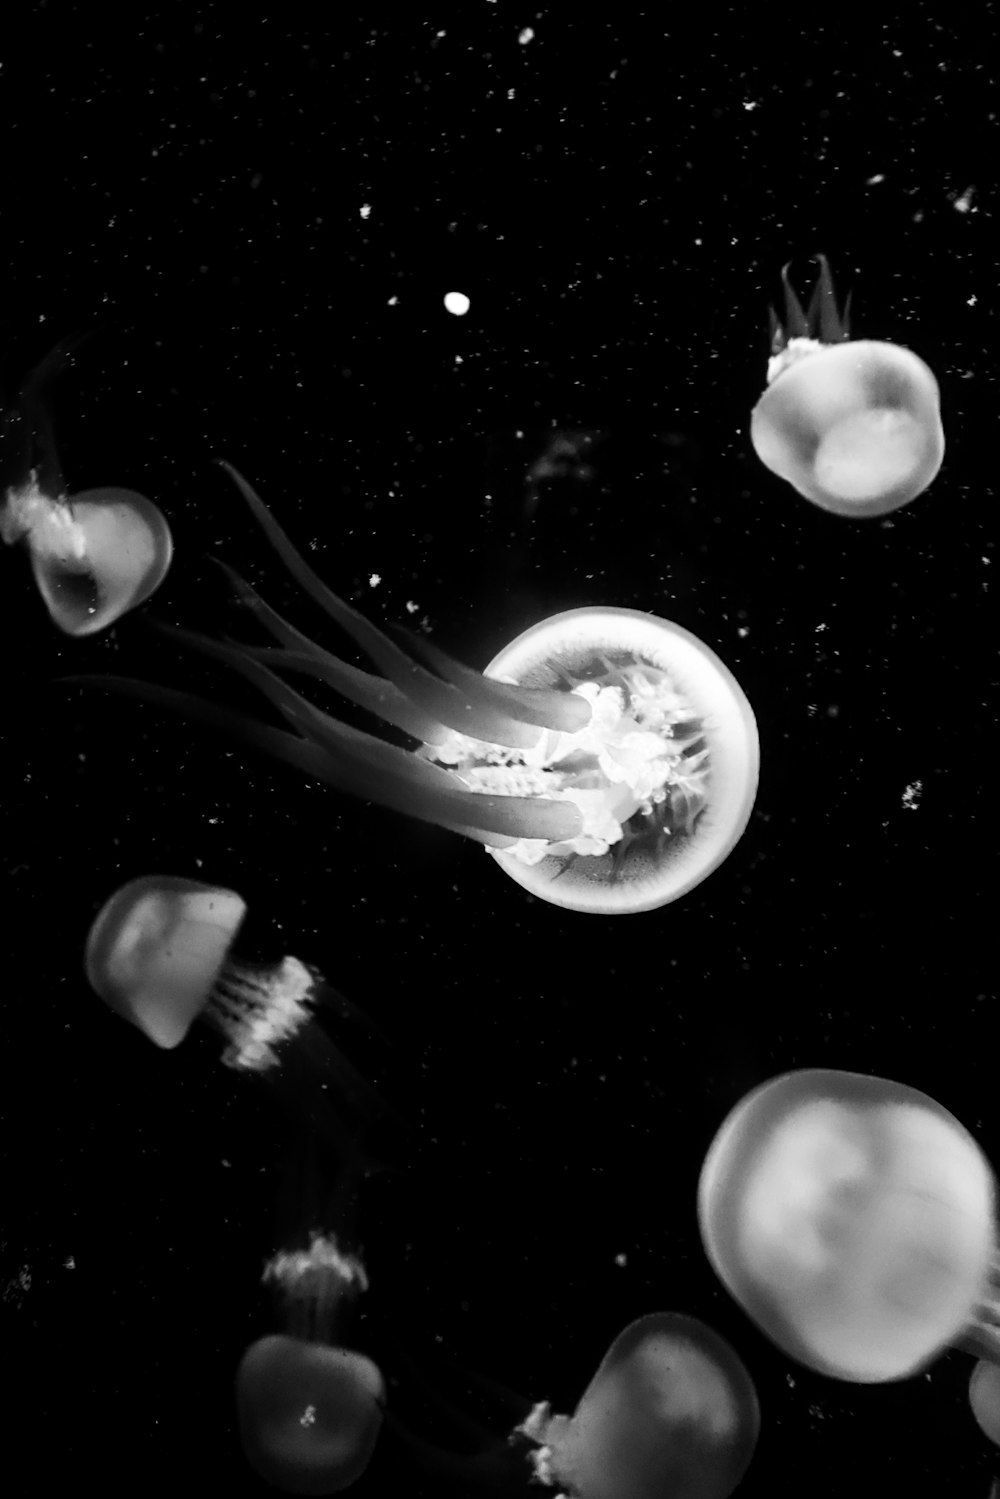 White And Black Jellyfish Illustration Photo Free Egg Image On Unsplash